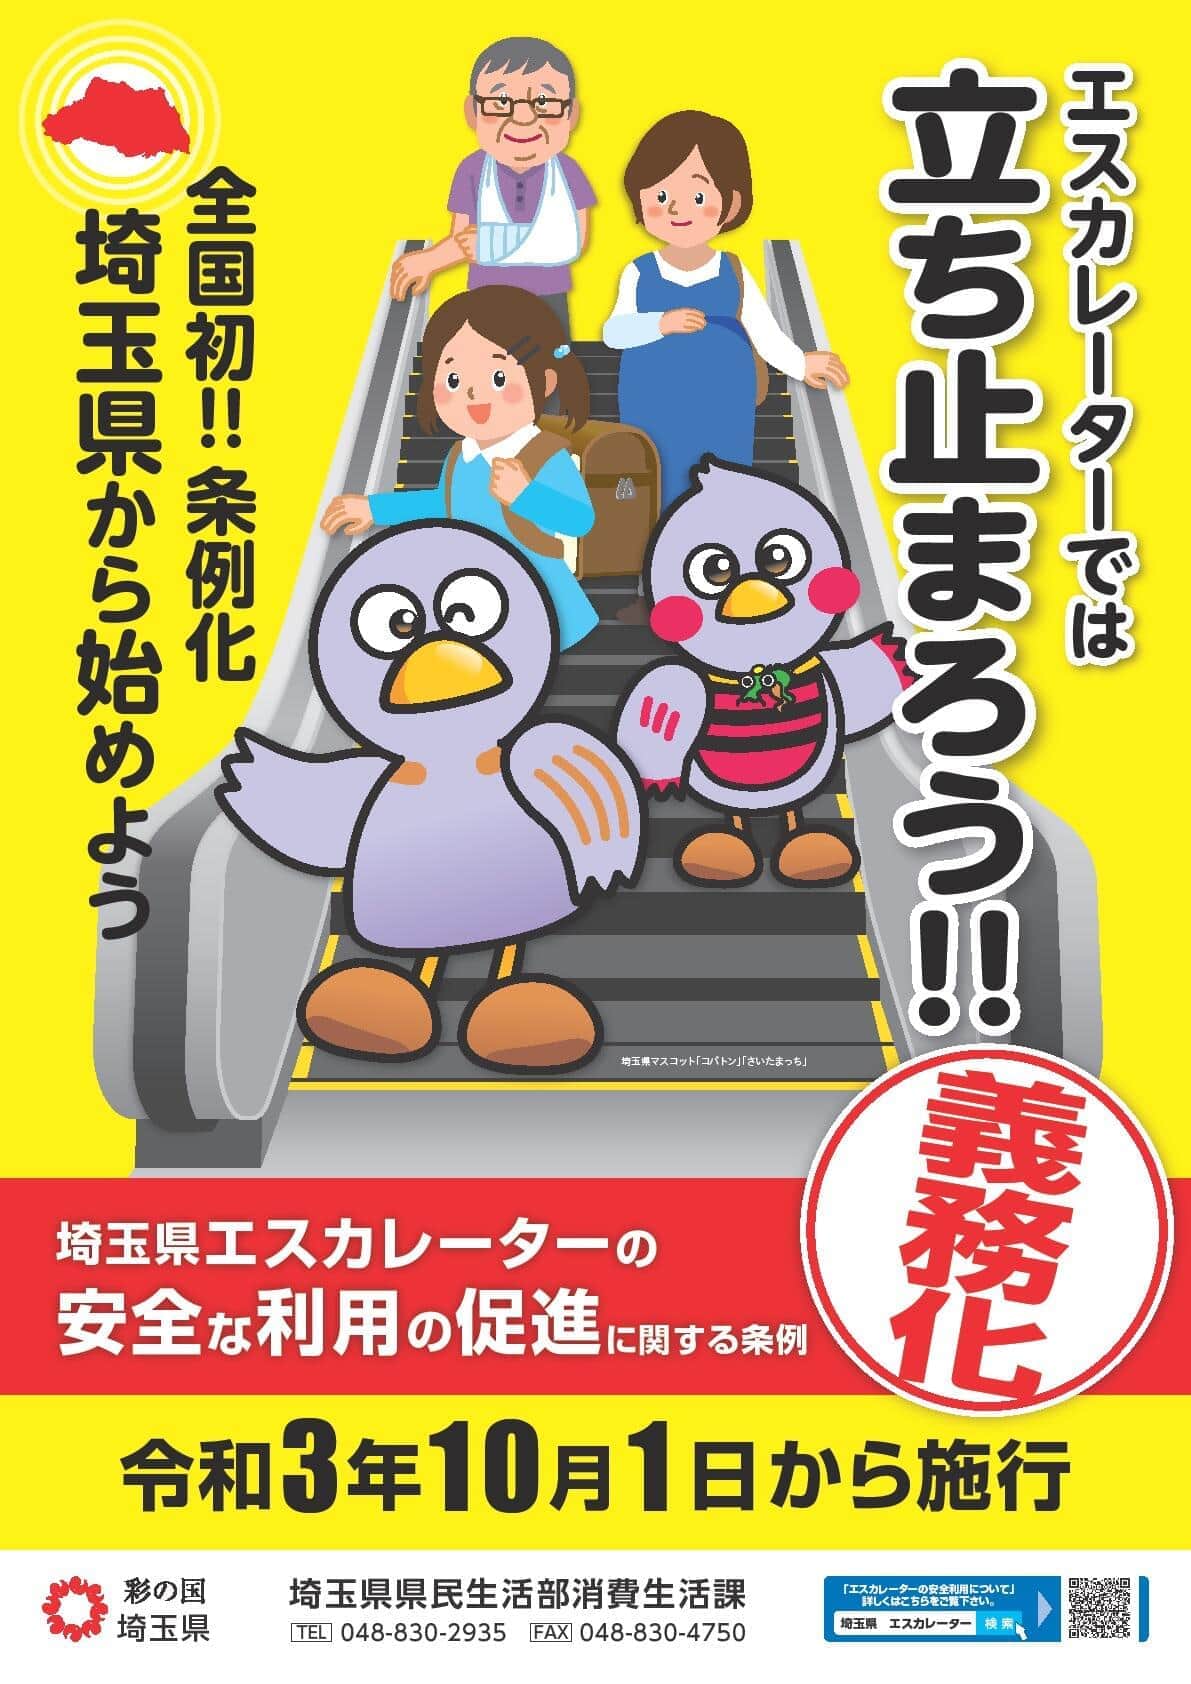 「埼玉県エスカレーターの安全な利用の促進に関する条例」のPRポスター（県ウェブサイトより）